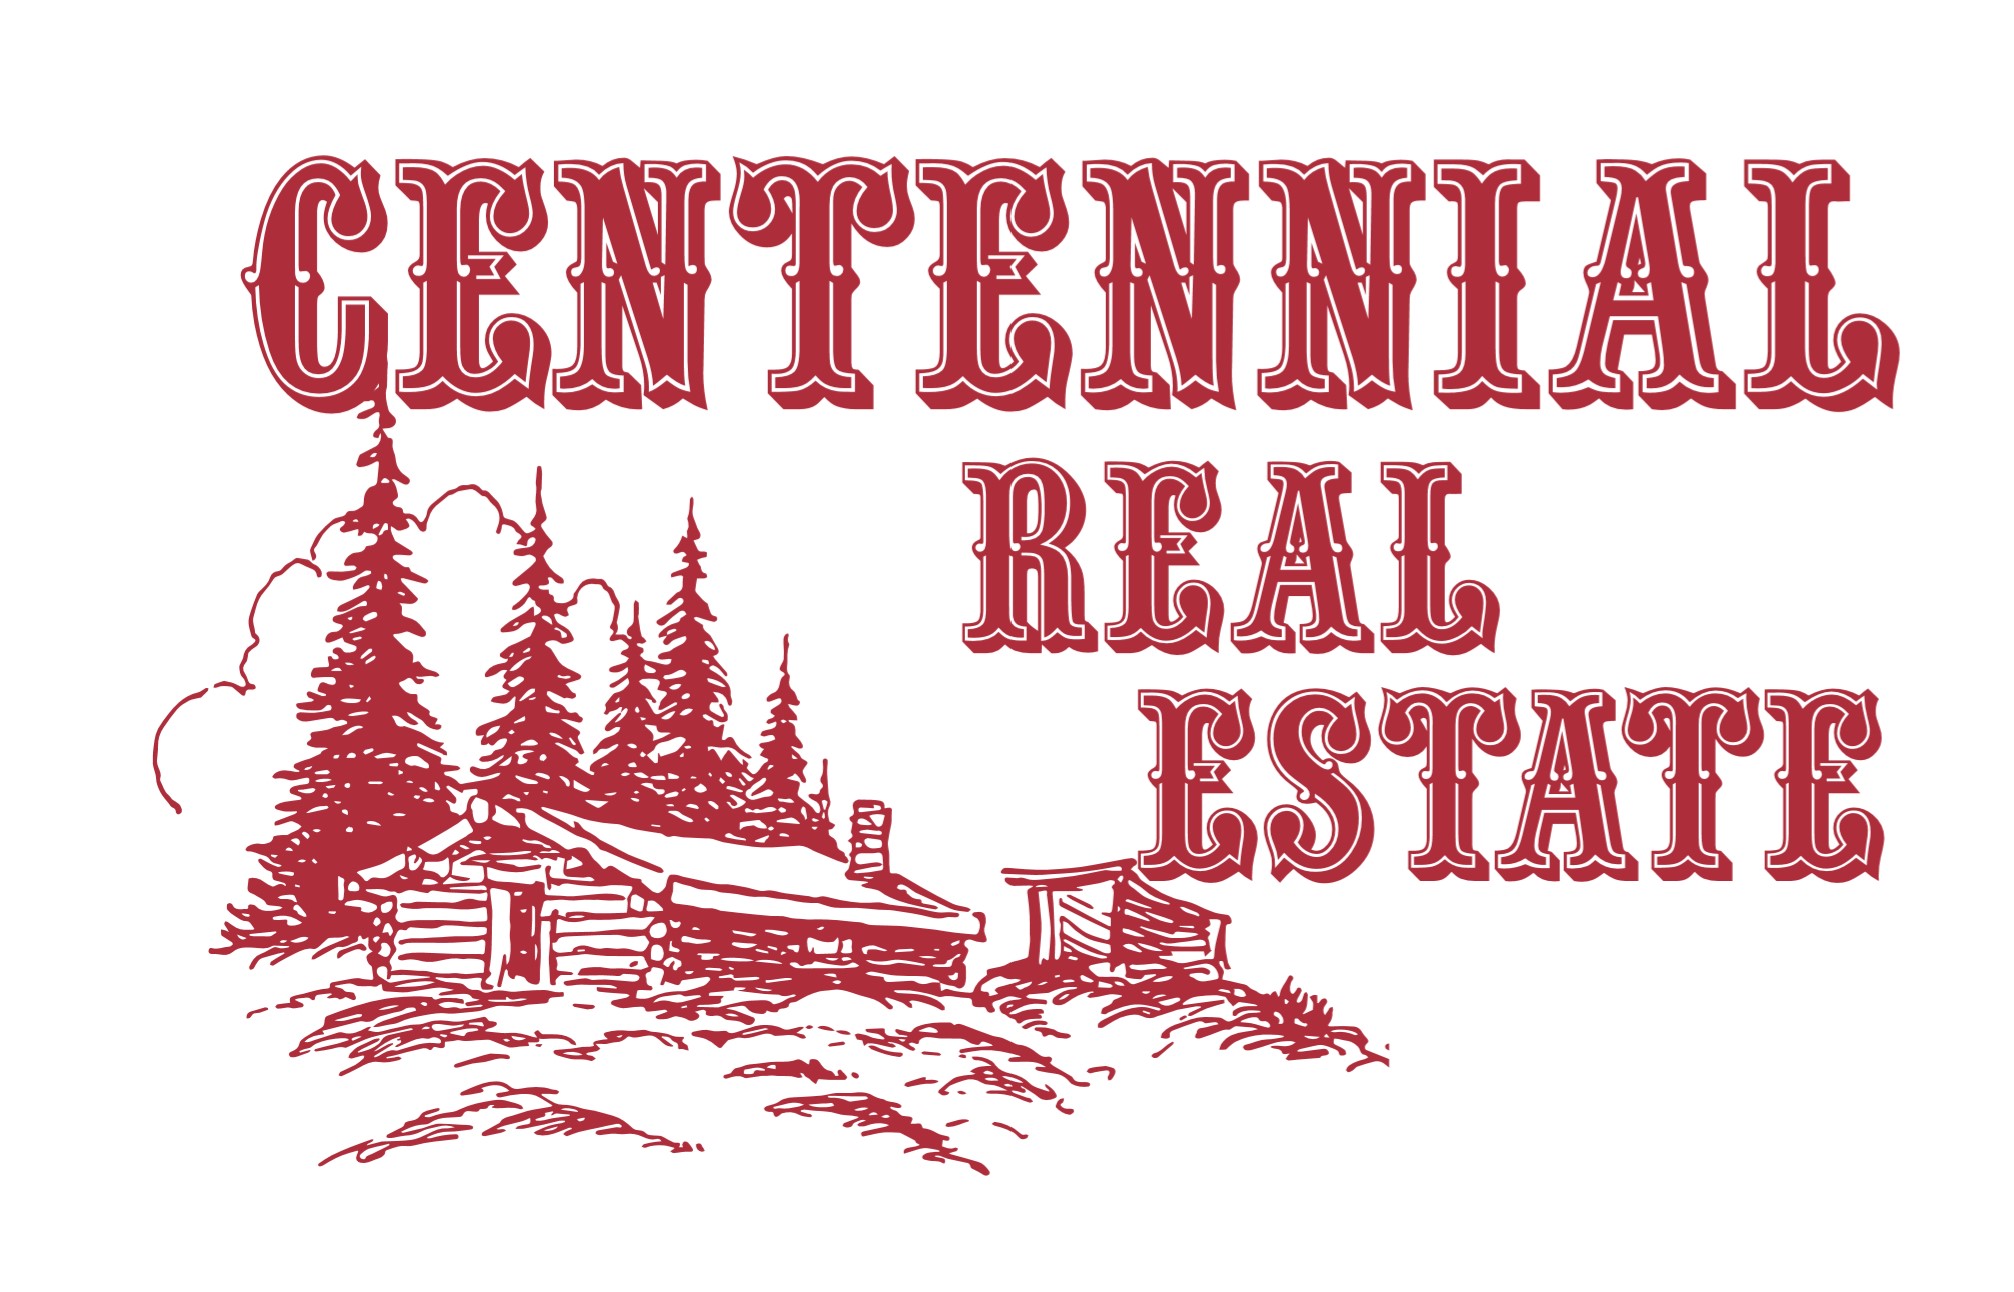 Centennial Real Estate